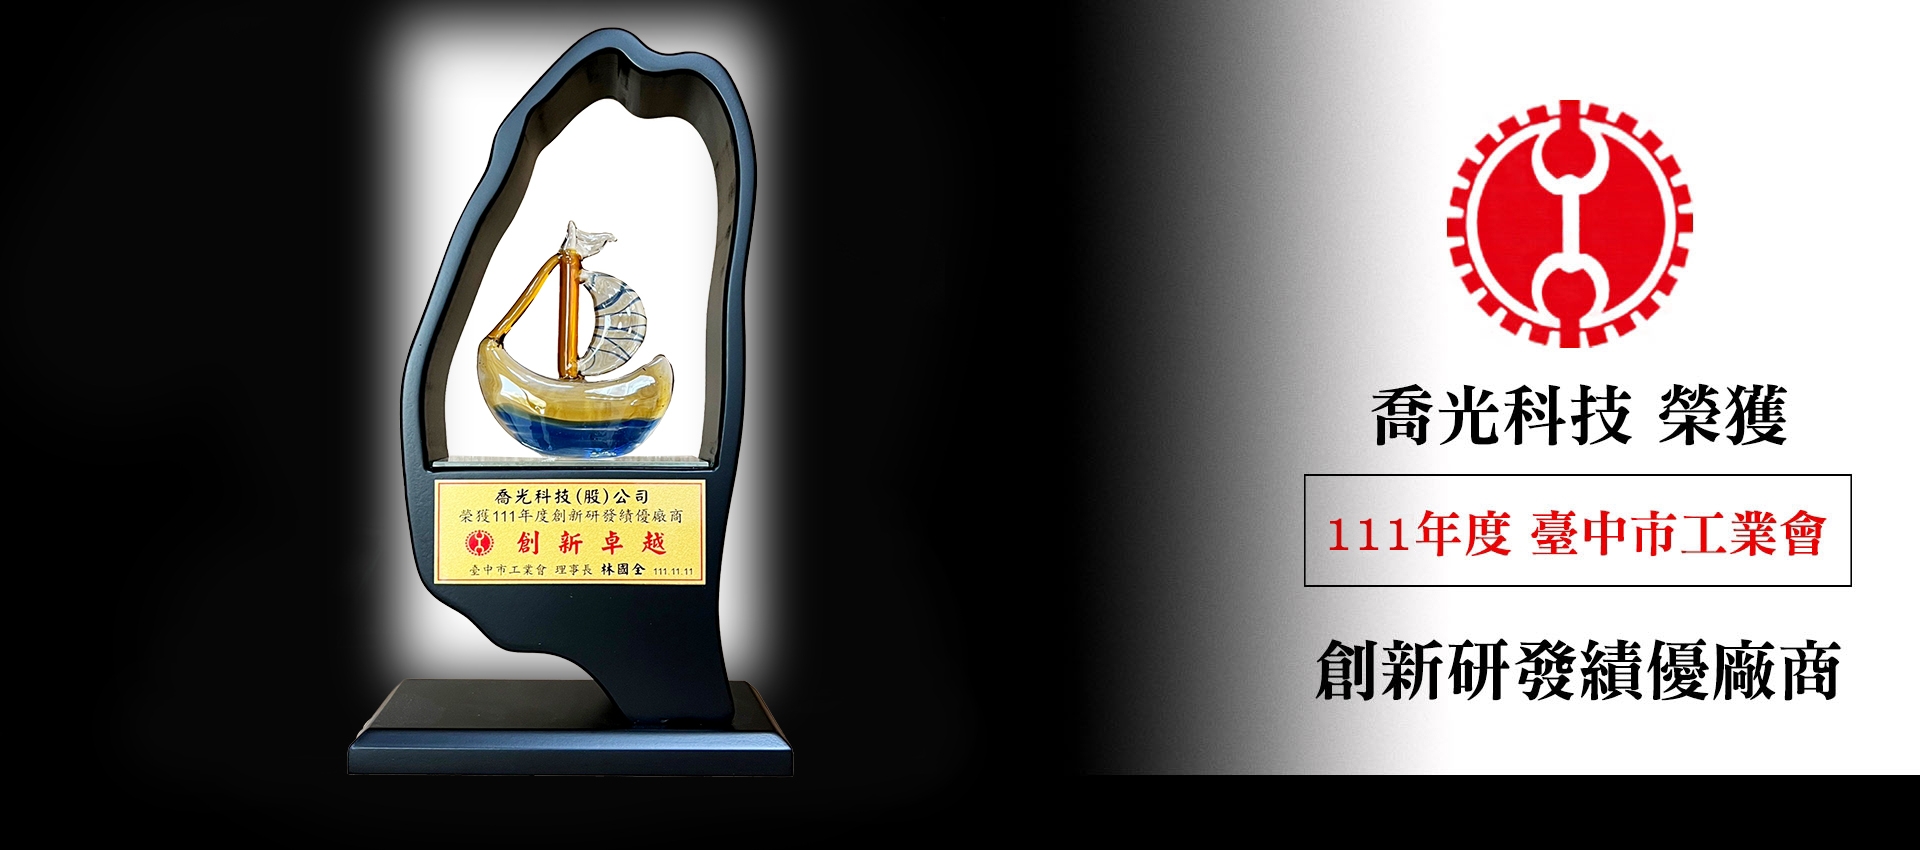 喬光科技榮獲 111年度台中市工業會績優廠商